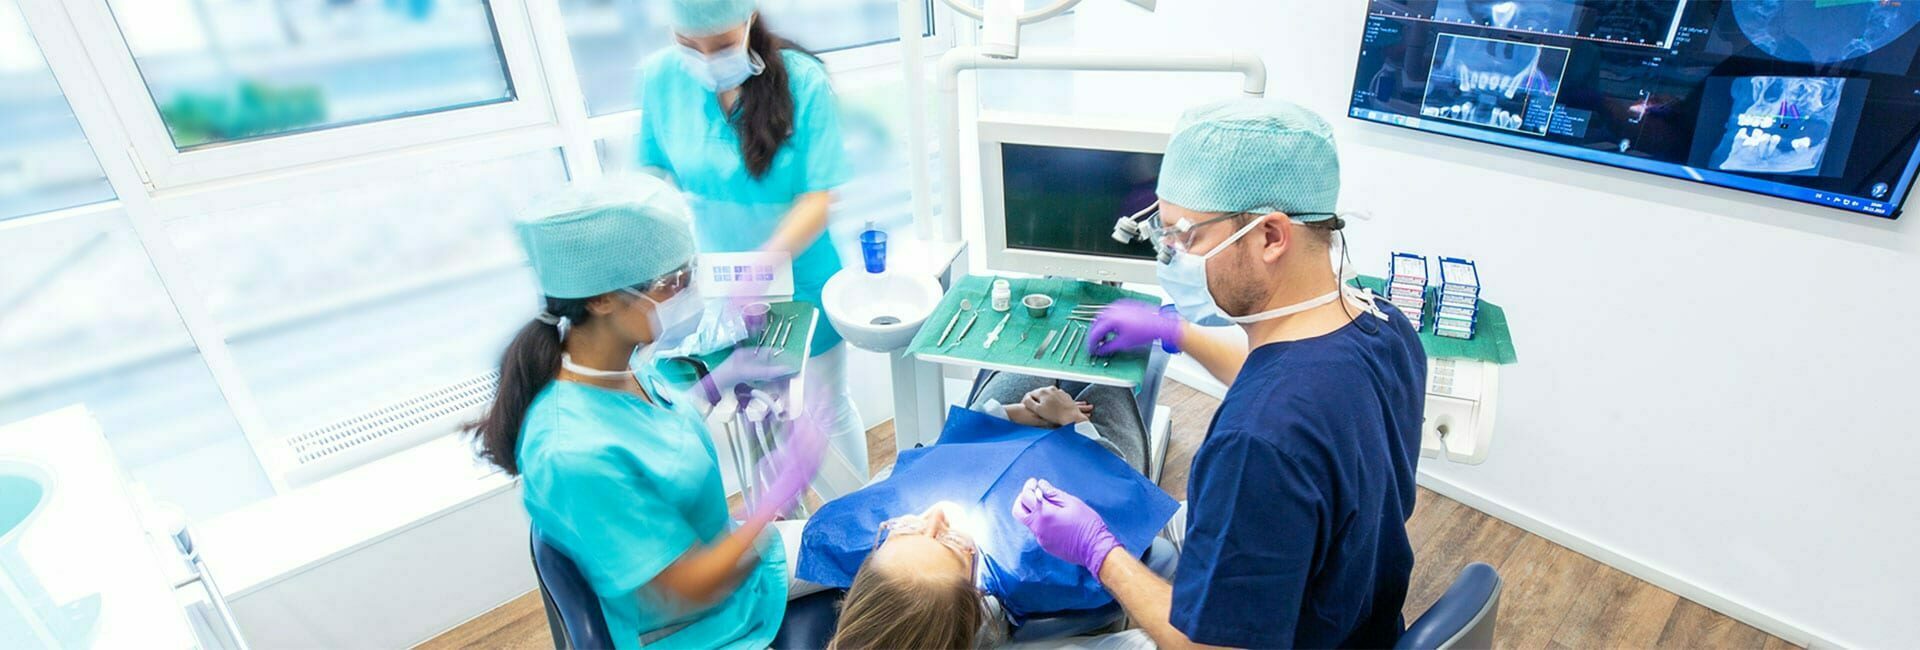 Zahnmedizinische Fachangestellte hilft Zahnarzt bei seiner Behandlung